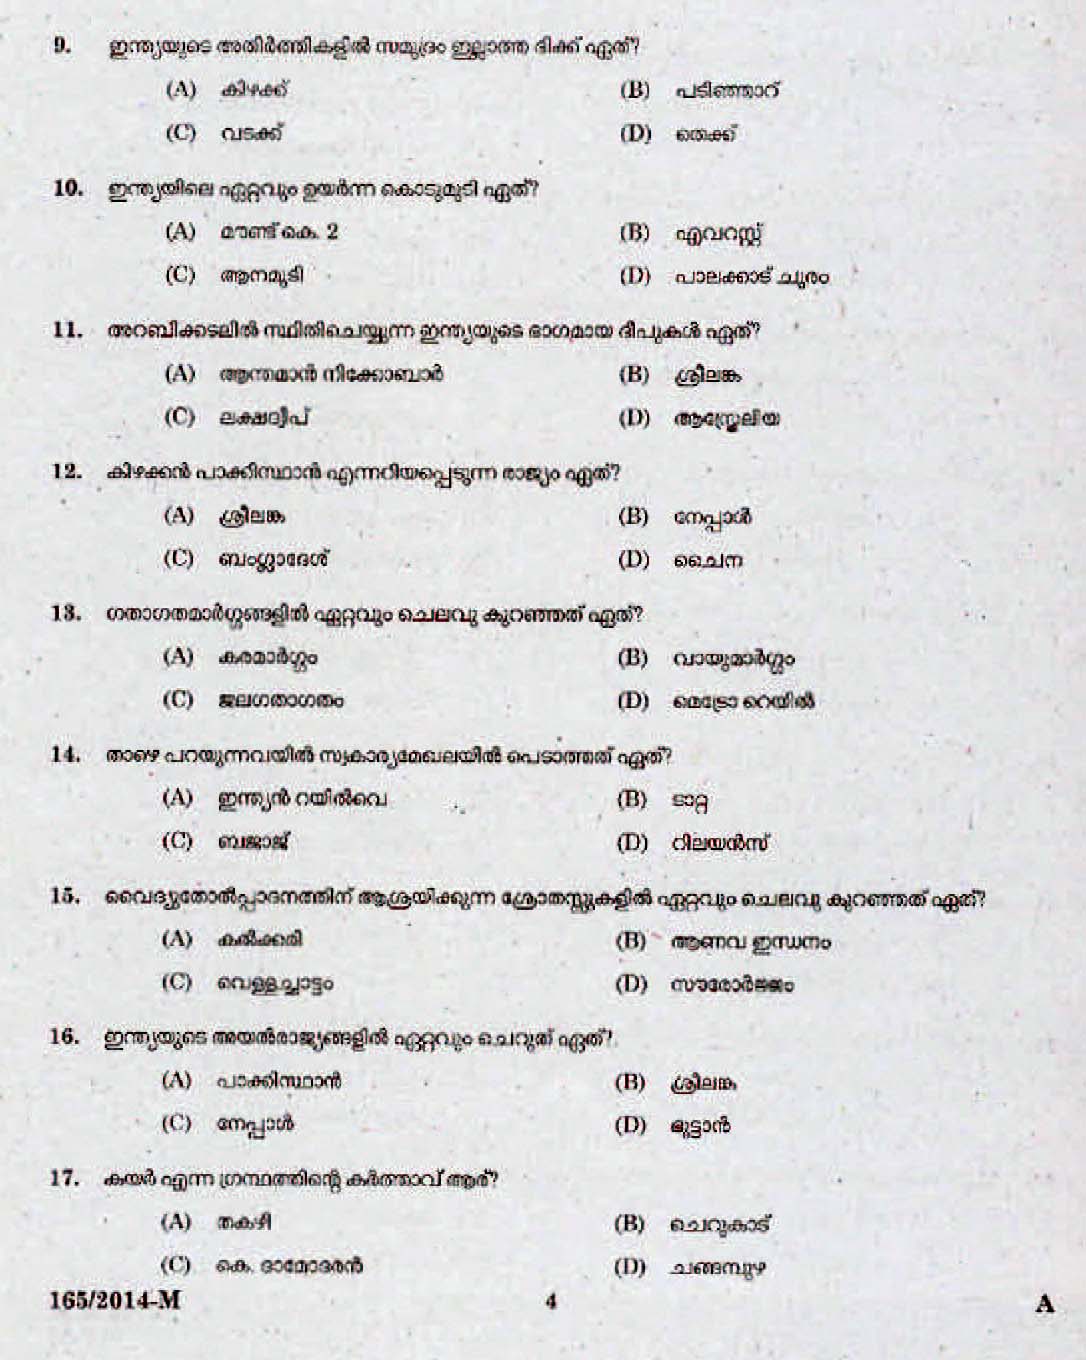 Kerala Last Grade Servants Exam 2014 Question Paper Code 1652014 M 2